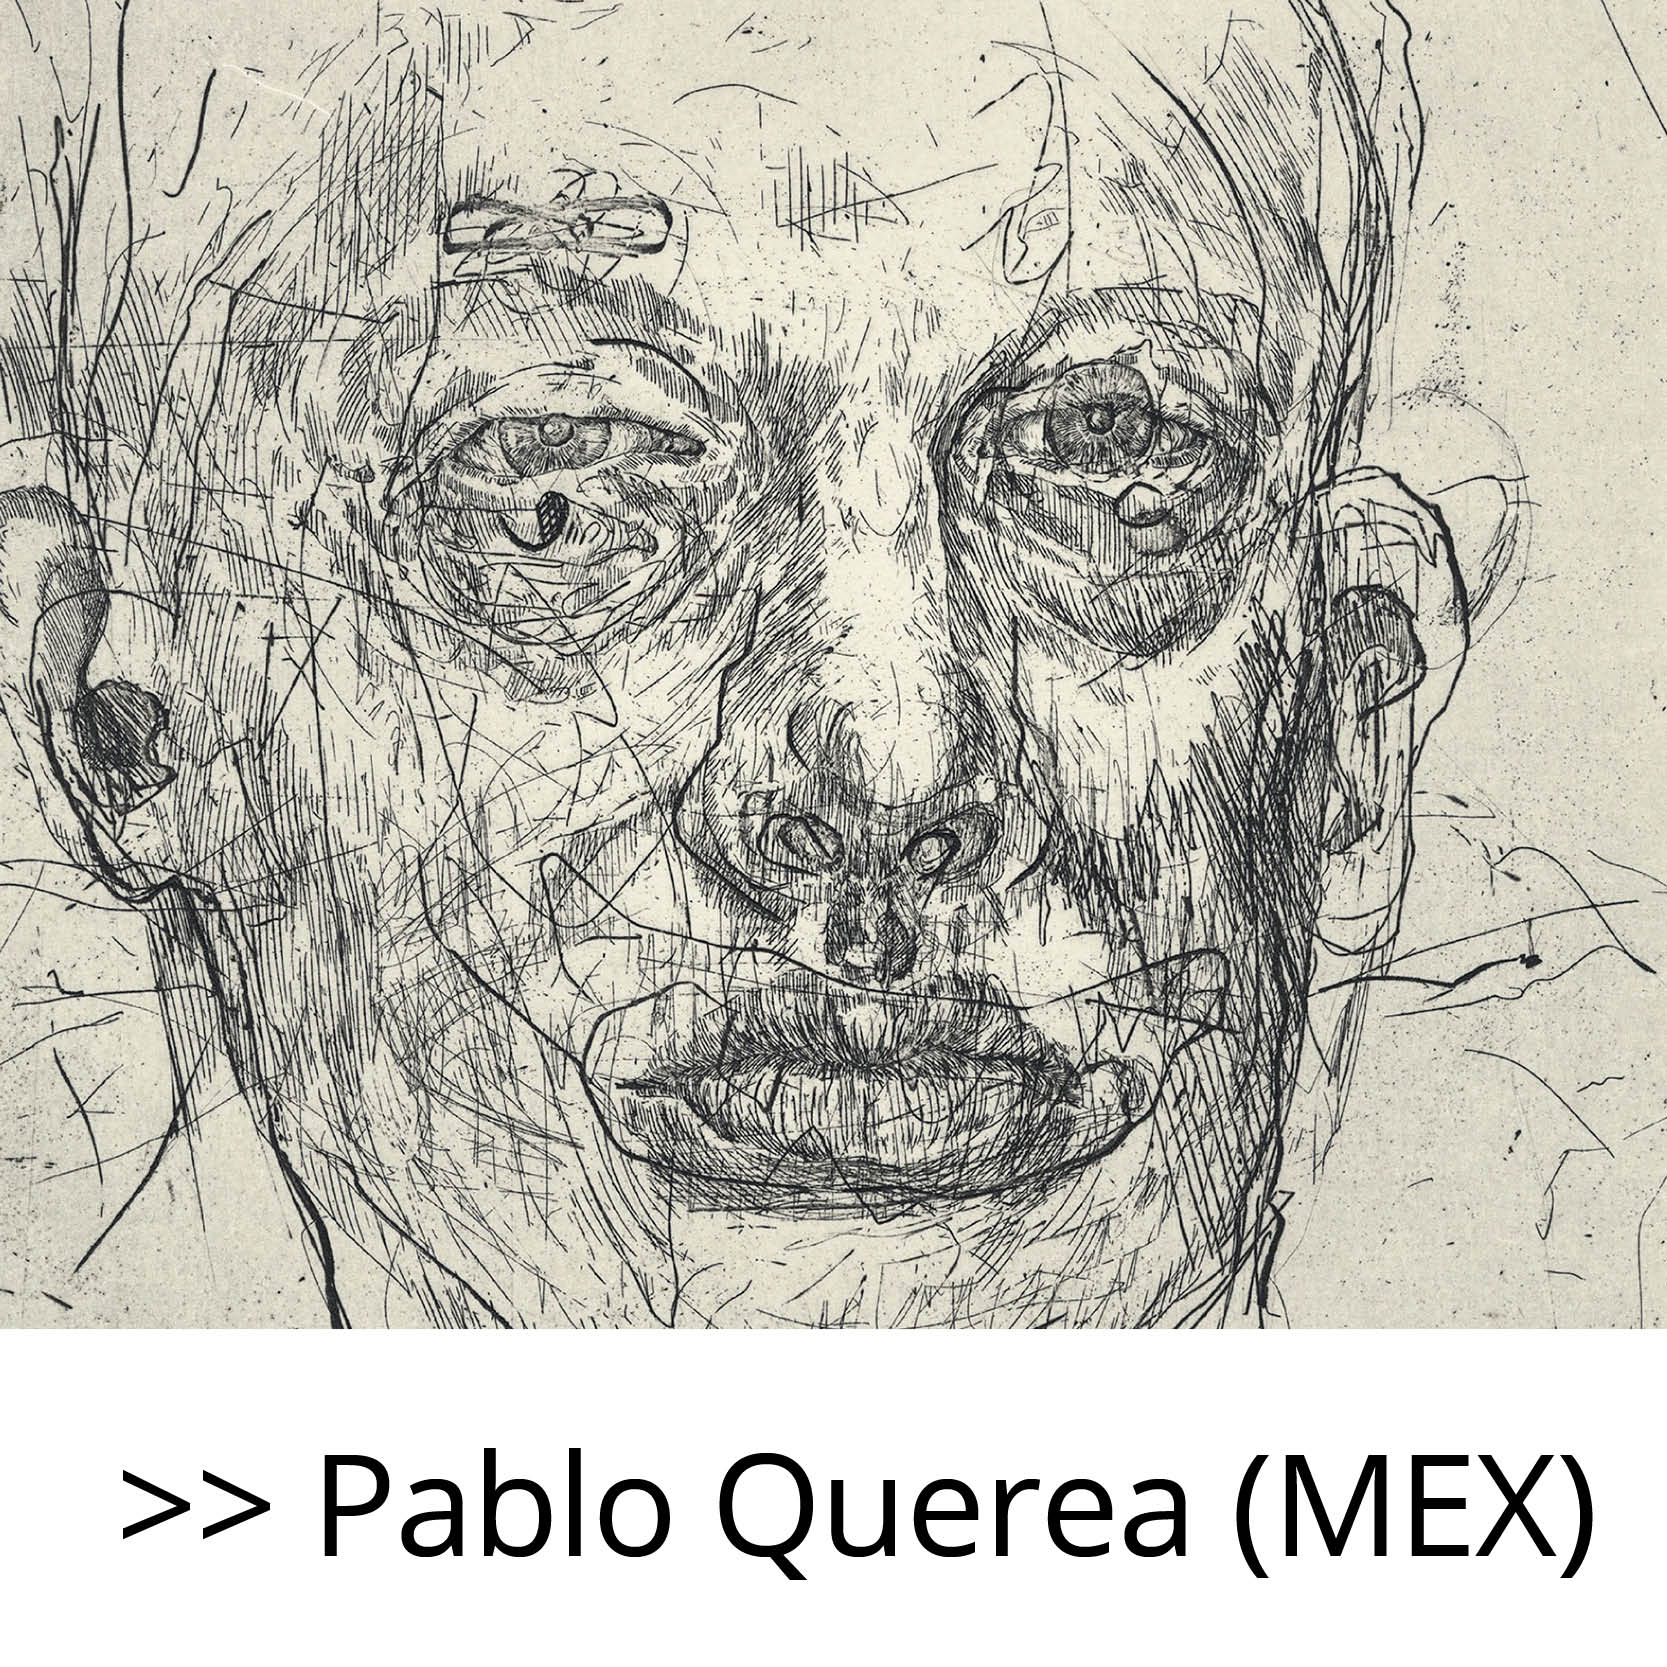 Pablo_Querea_(MEX)